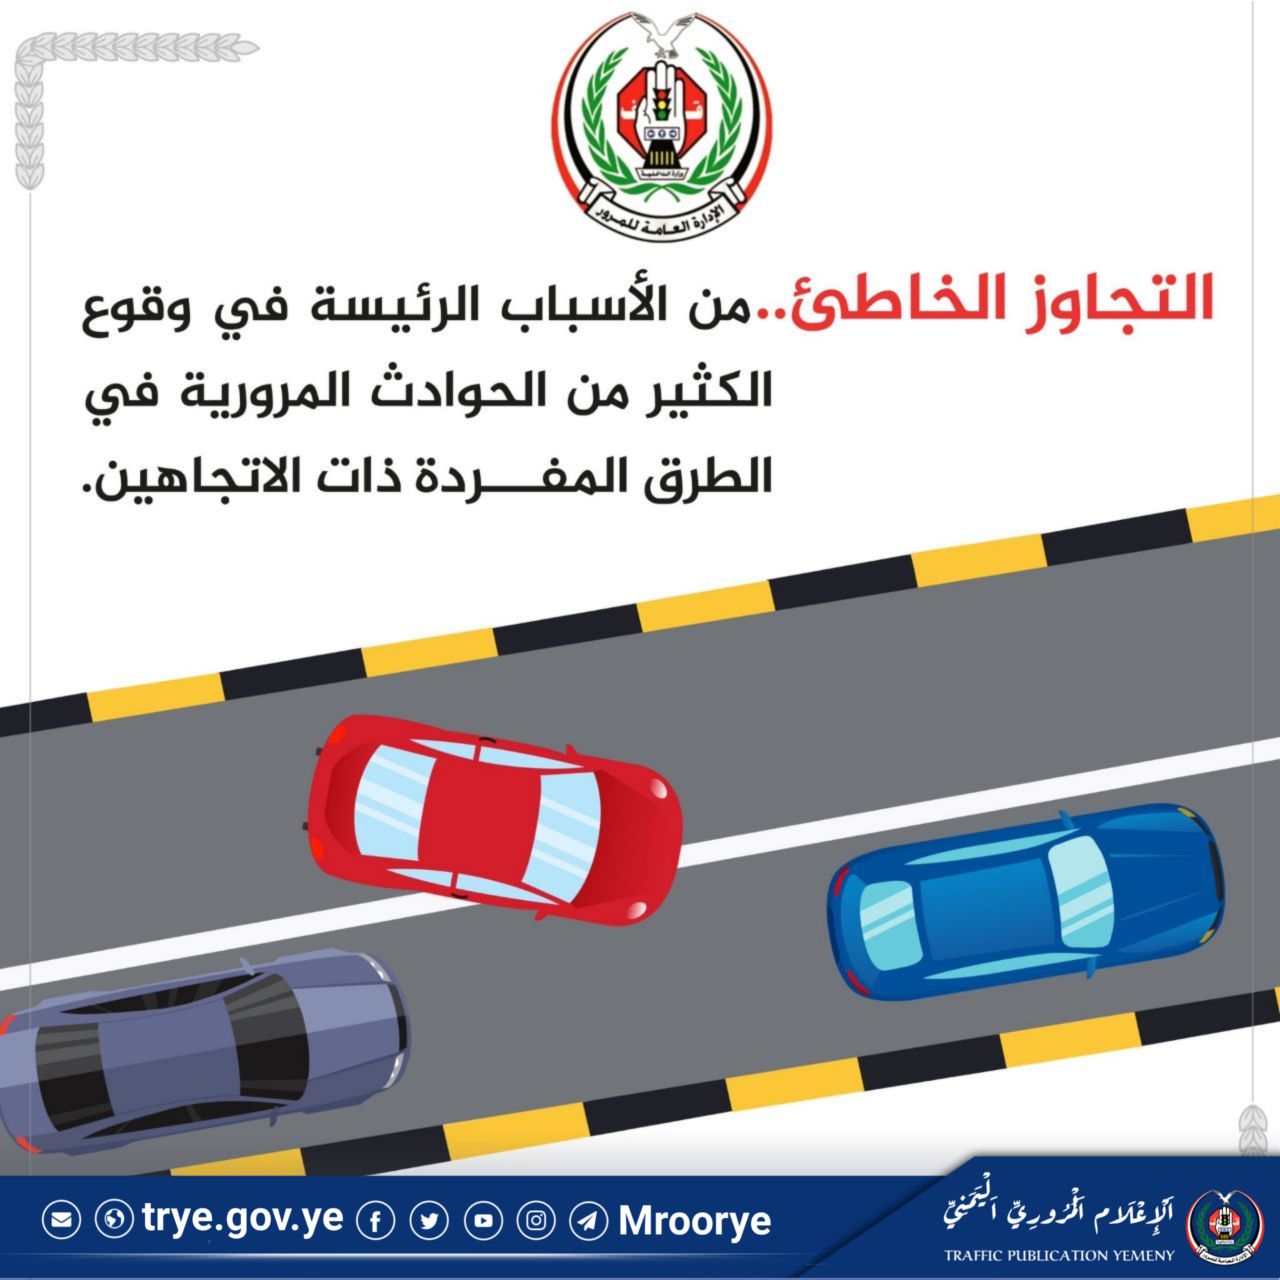 التوعية المرورية هو تعزيز السلوك المروري الآمن والمسؤول بين السائقين والمشاة على الطرق